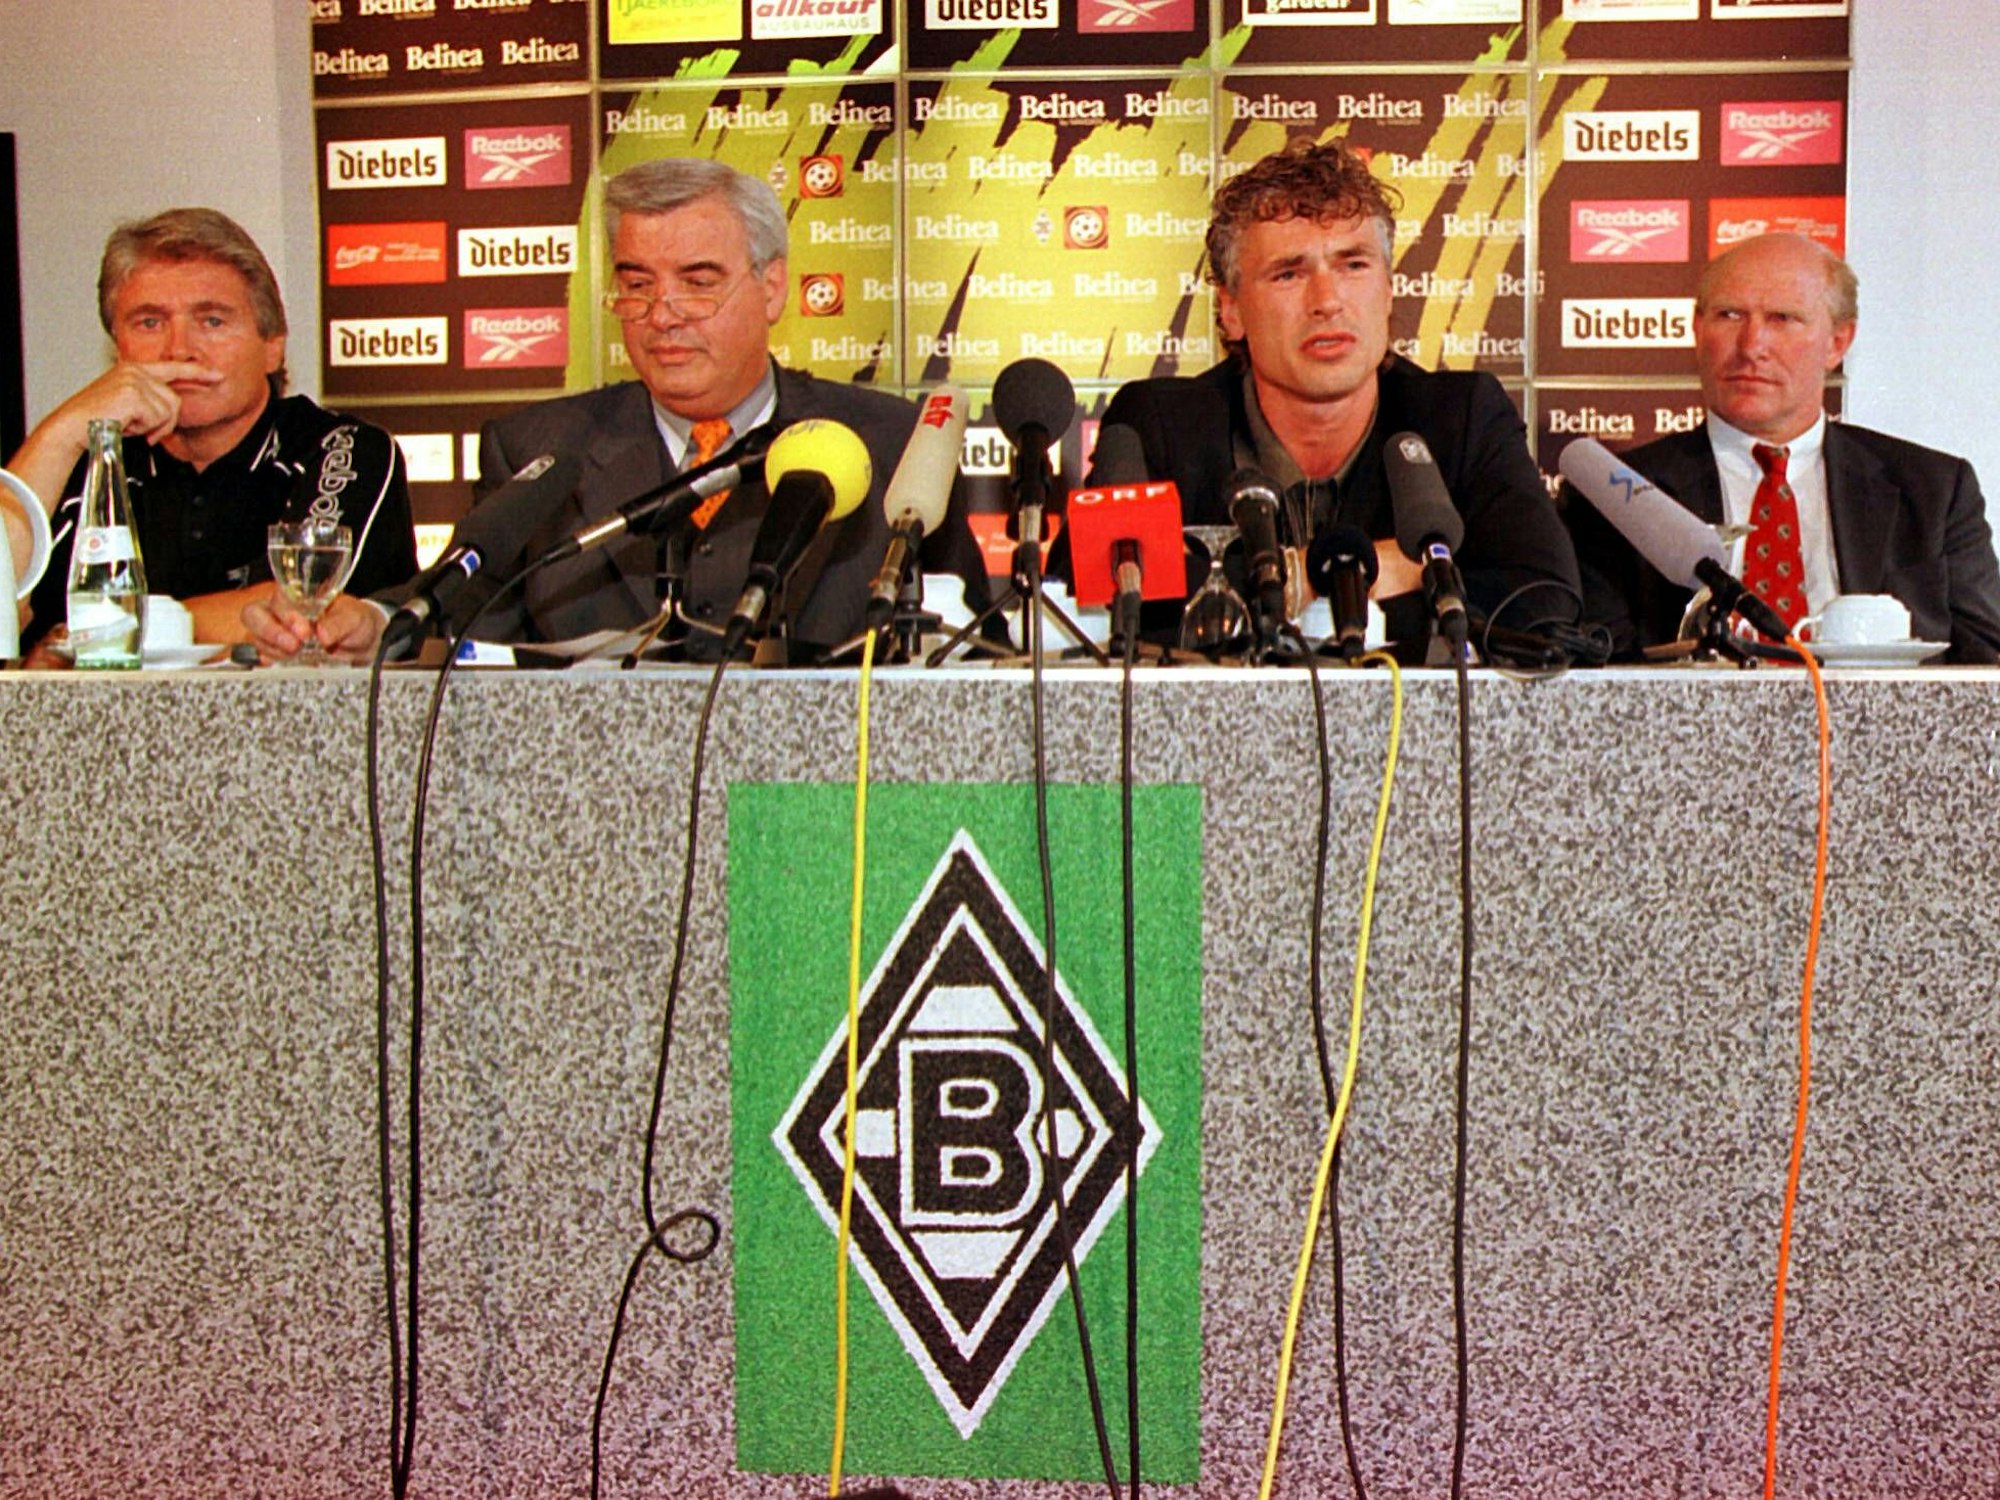 Trainer Friedel Rausch, Gladbach-Präsident Wilfried Jacobs, Toni Polster und Manager Rolf Rüssmann auf der Pressekonferenz